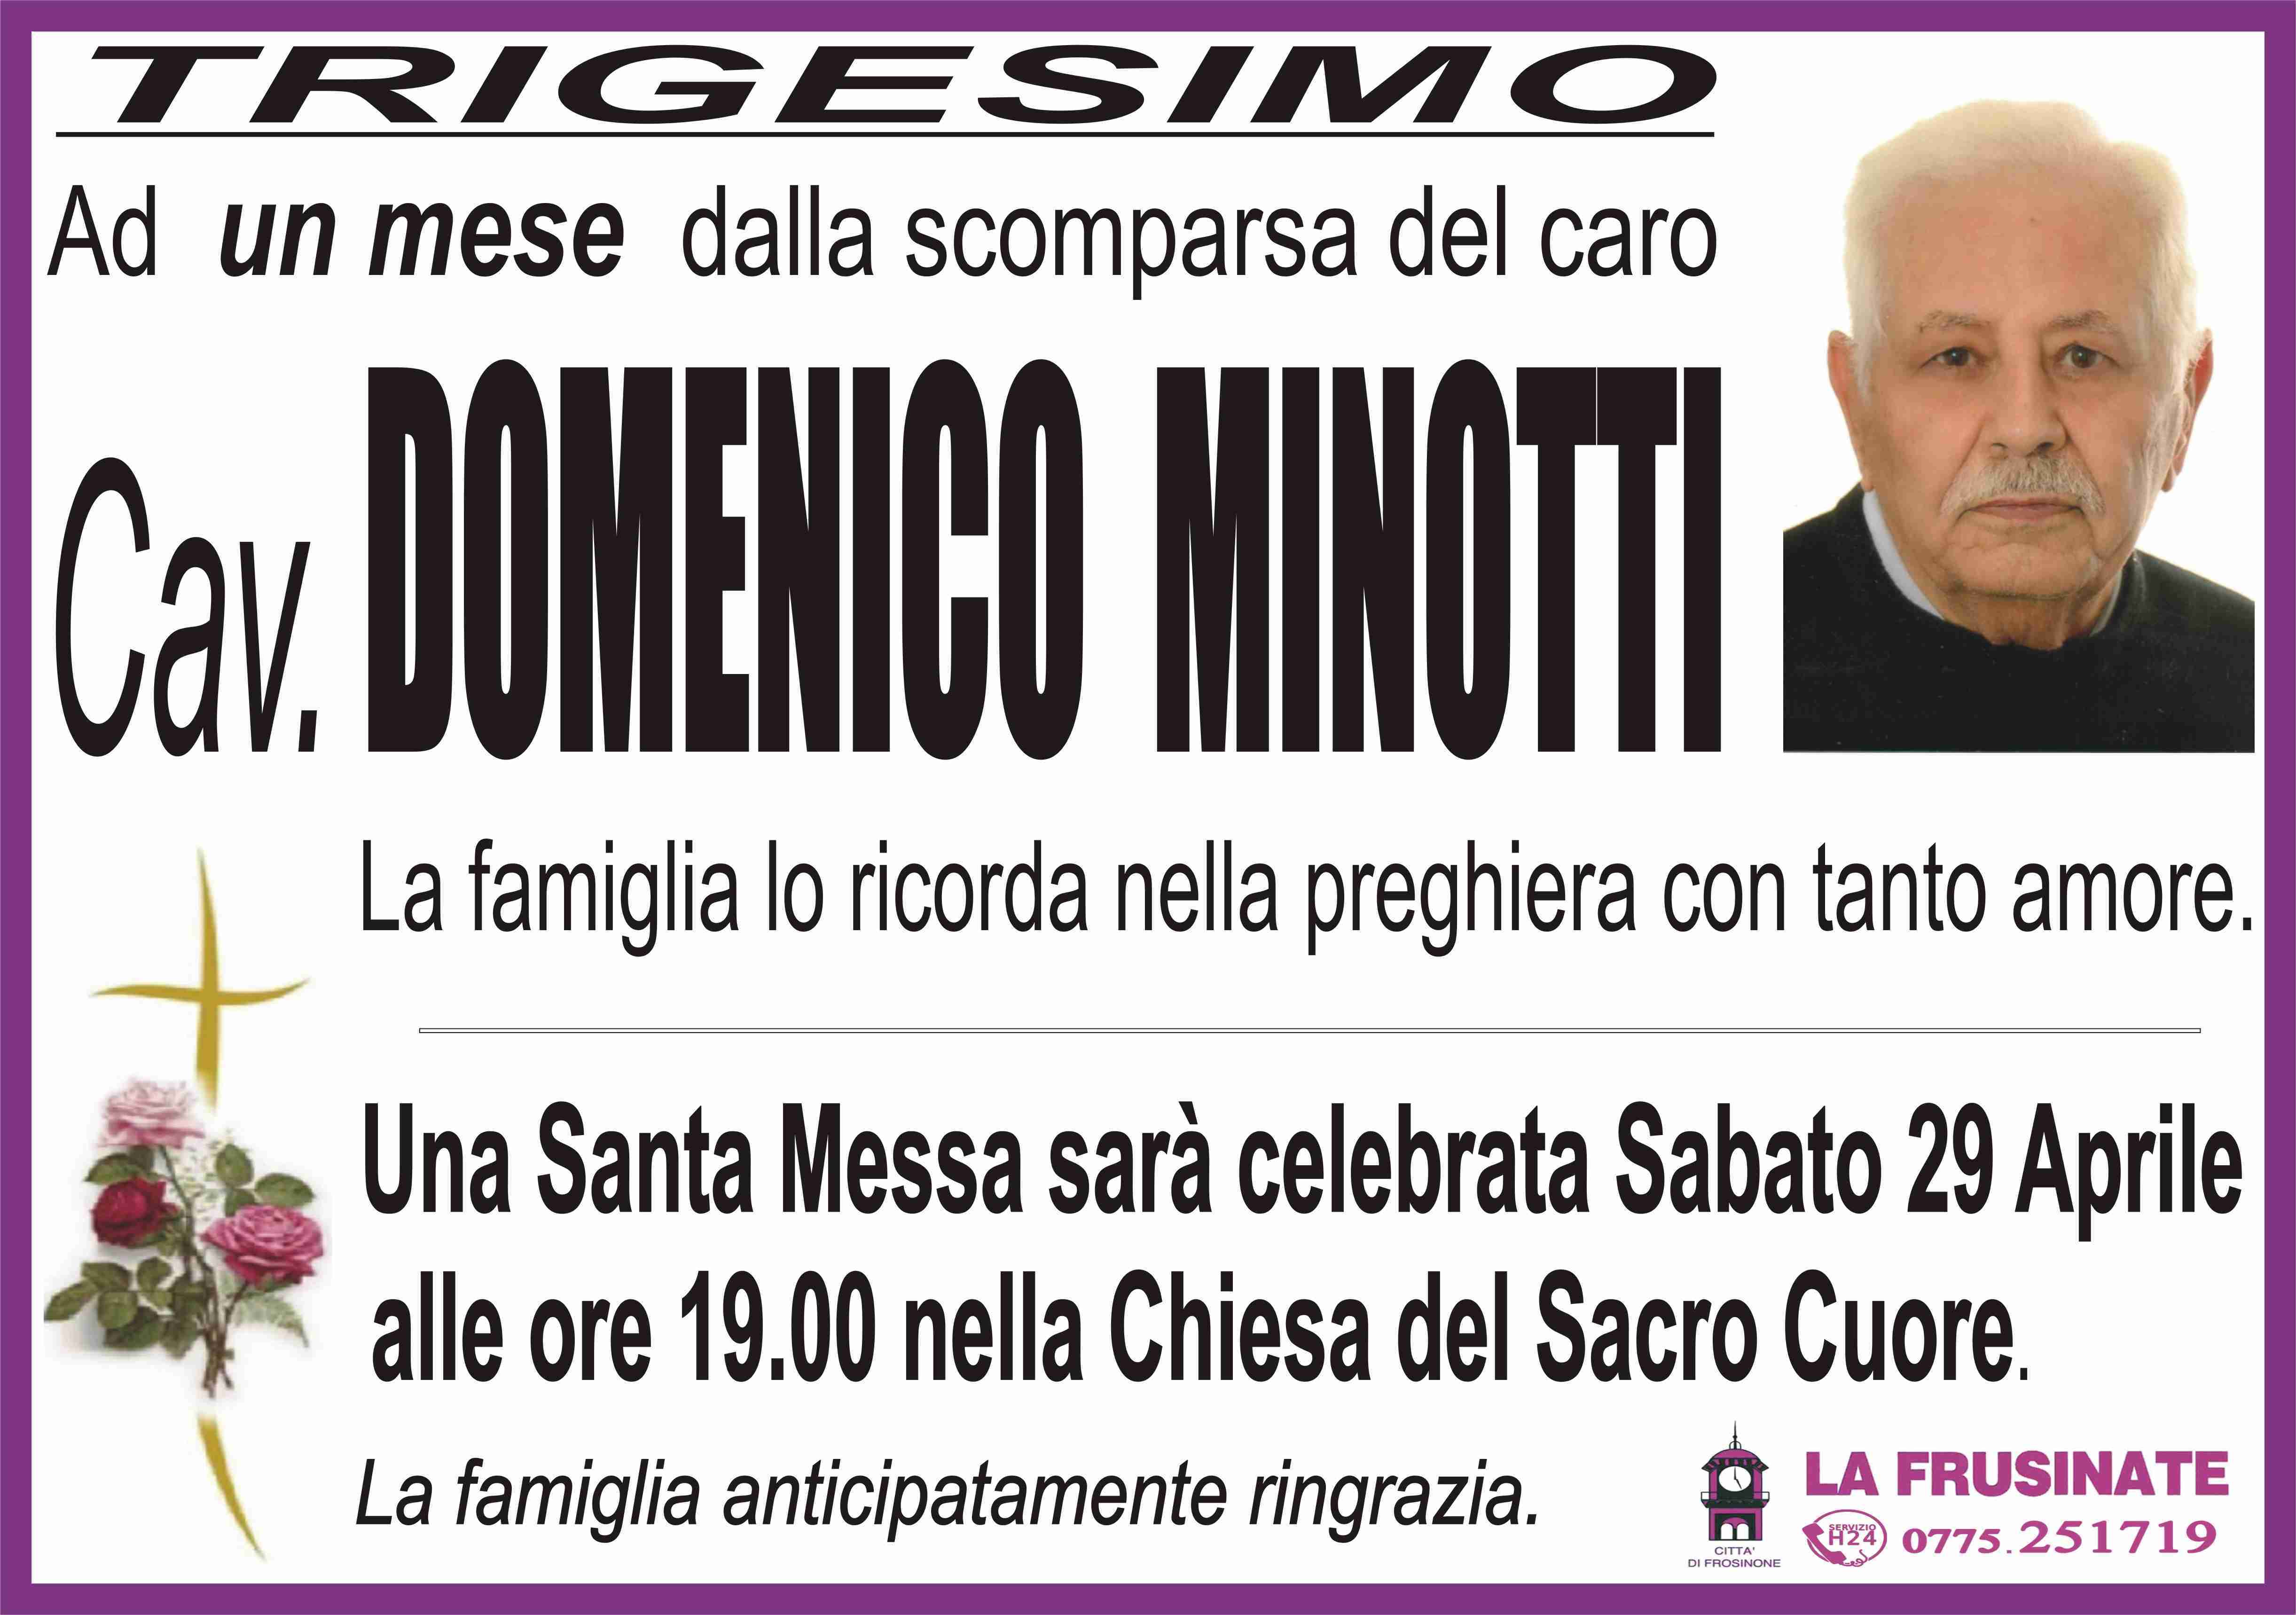 Domenico Minotti